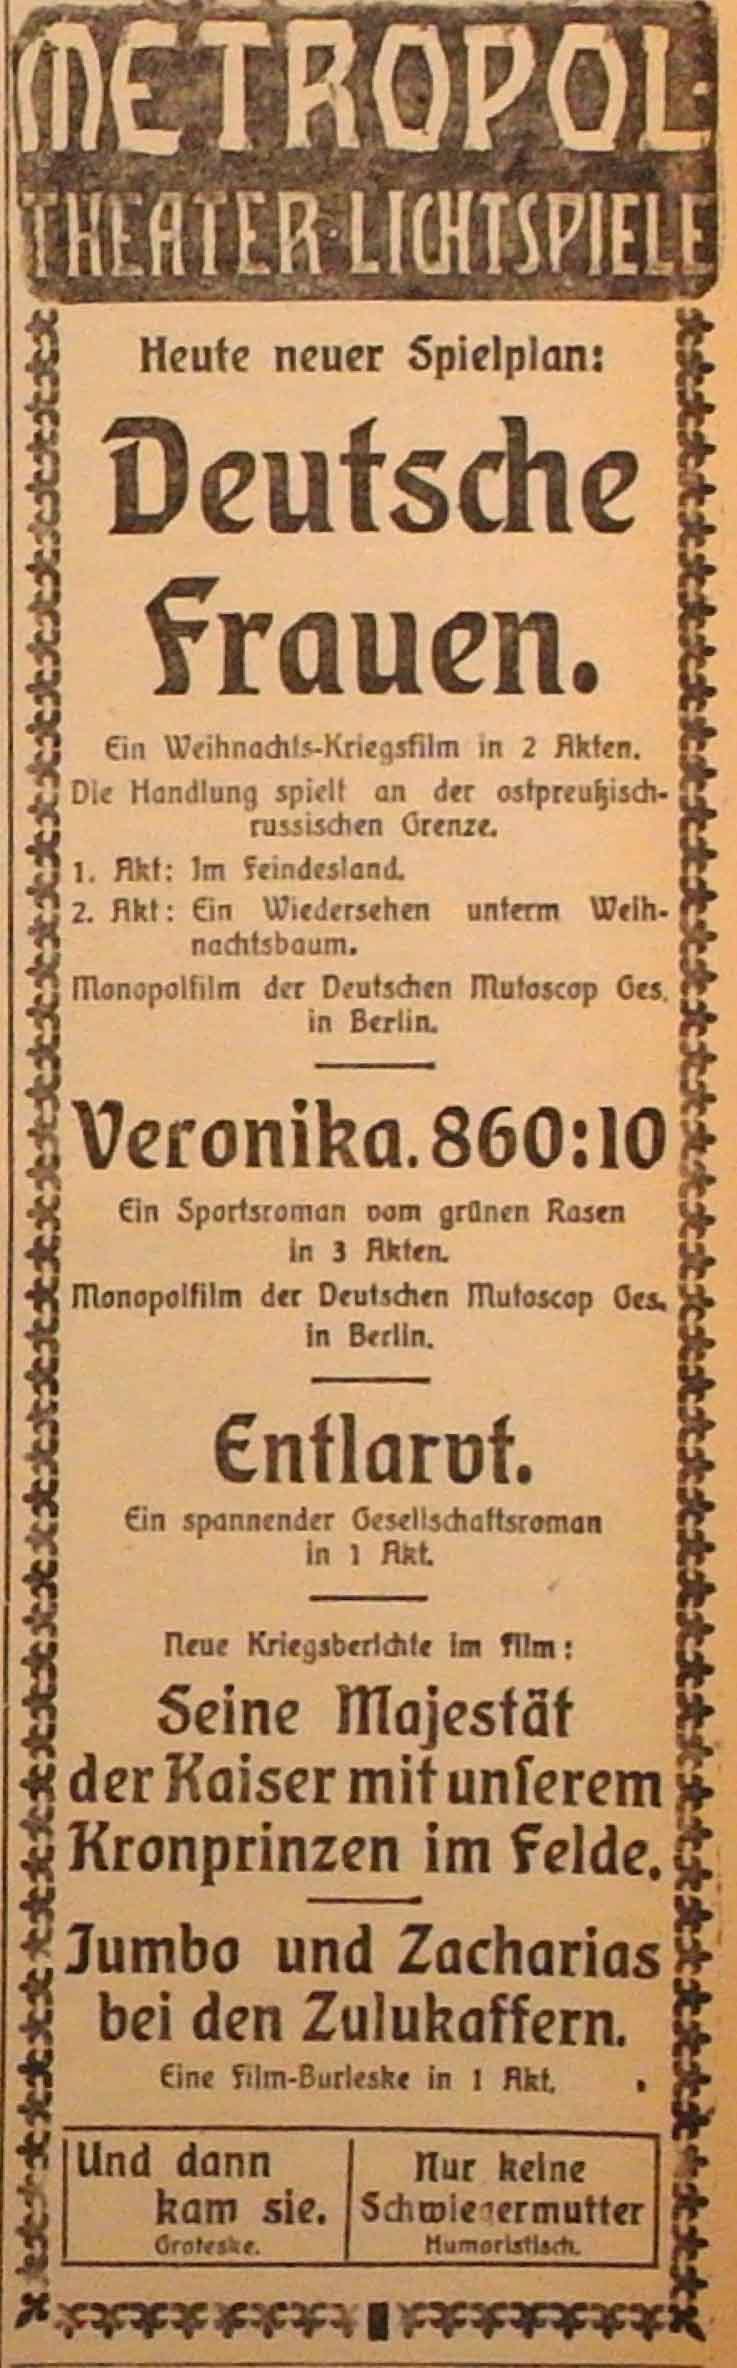 Anzeige im General-Anzeiger vom 22. Dezember 1914